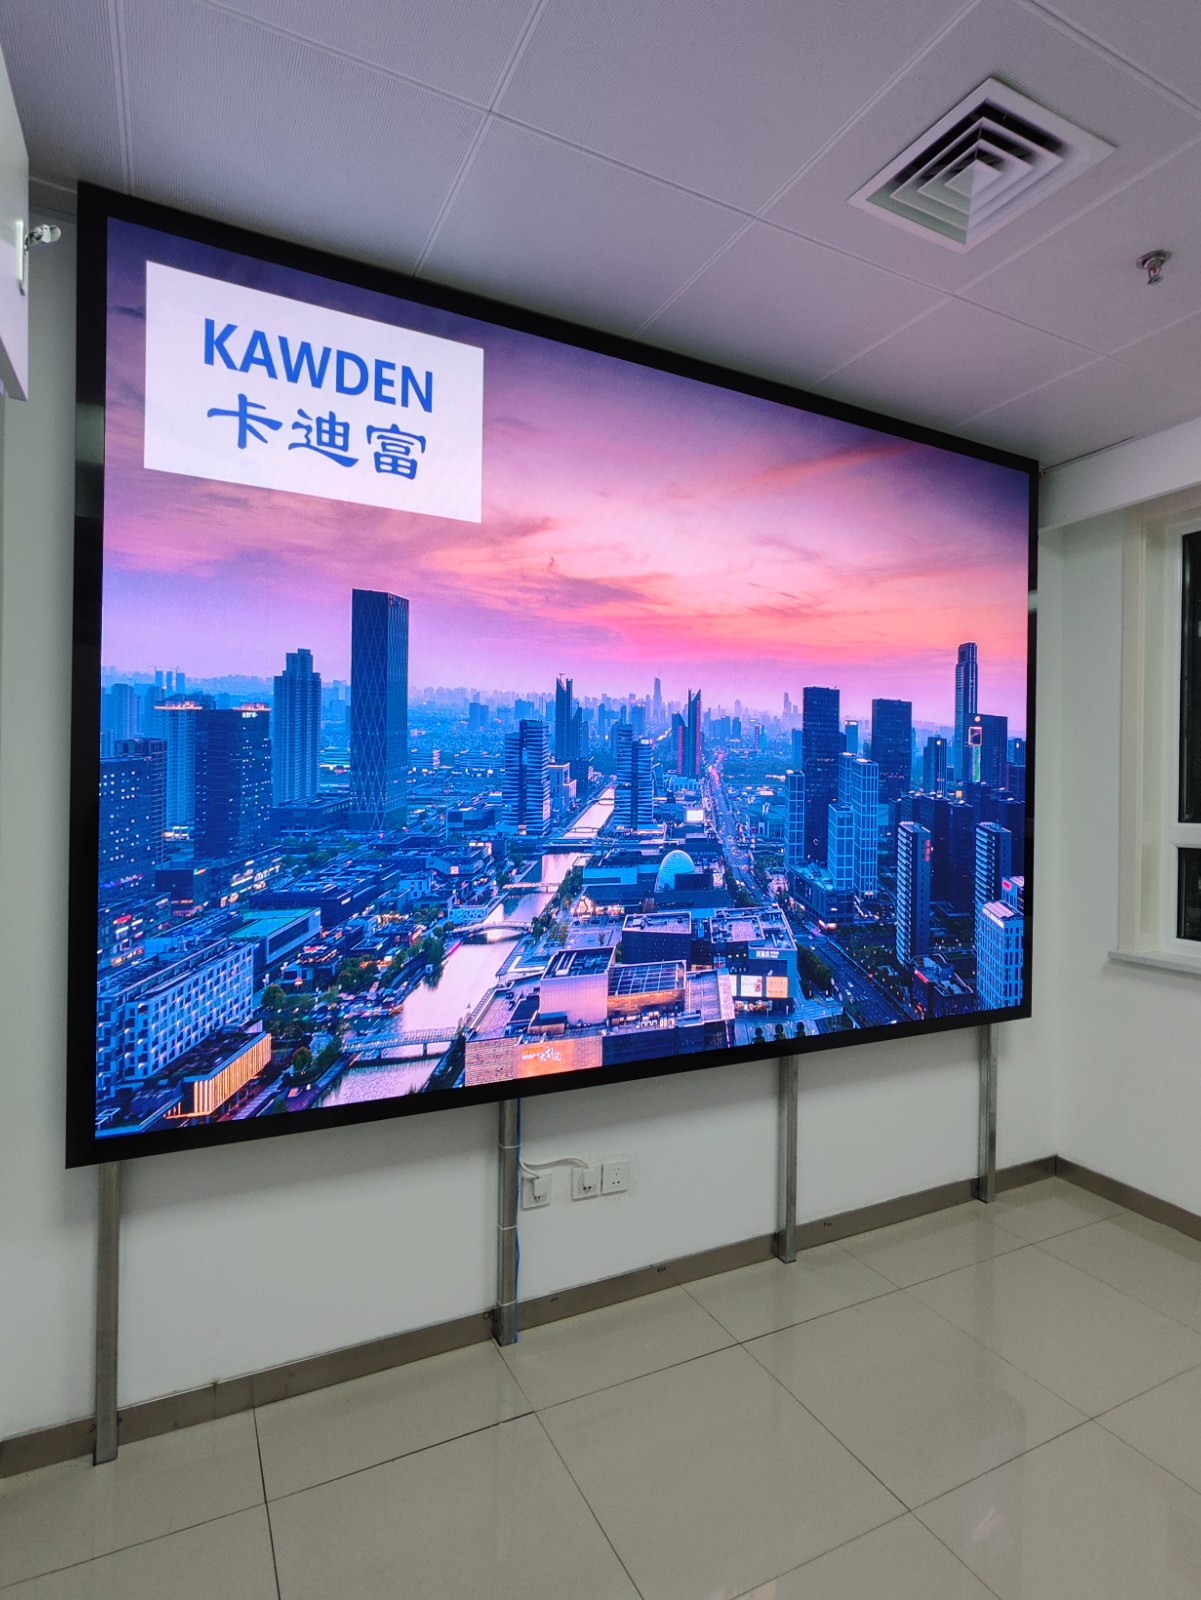 北京藏医院展示项目中的P1.86LED显示屏